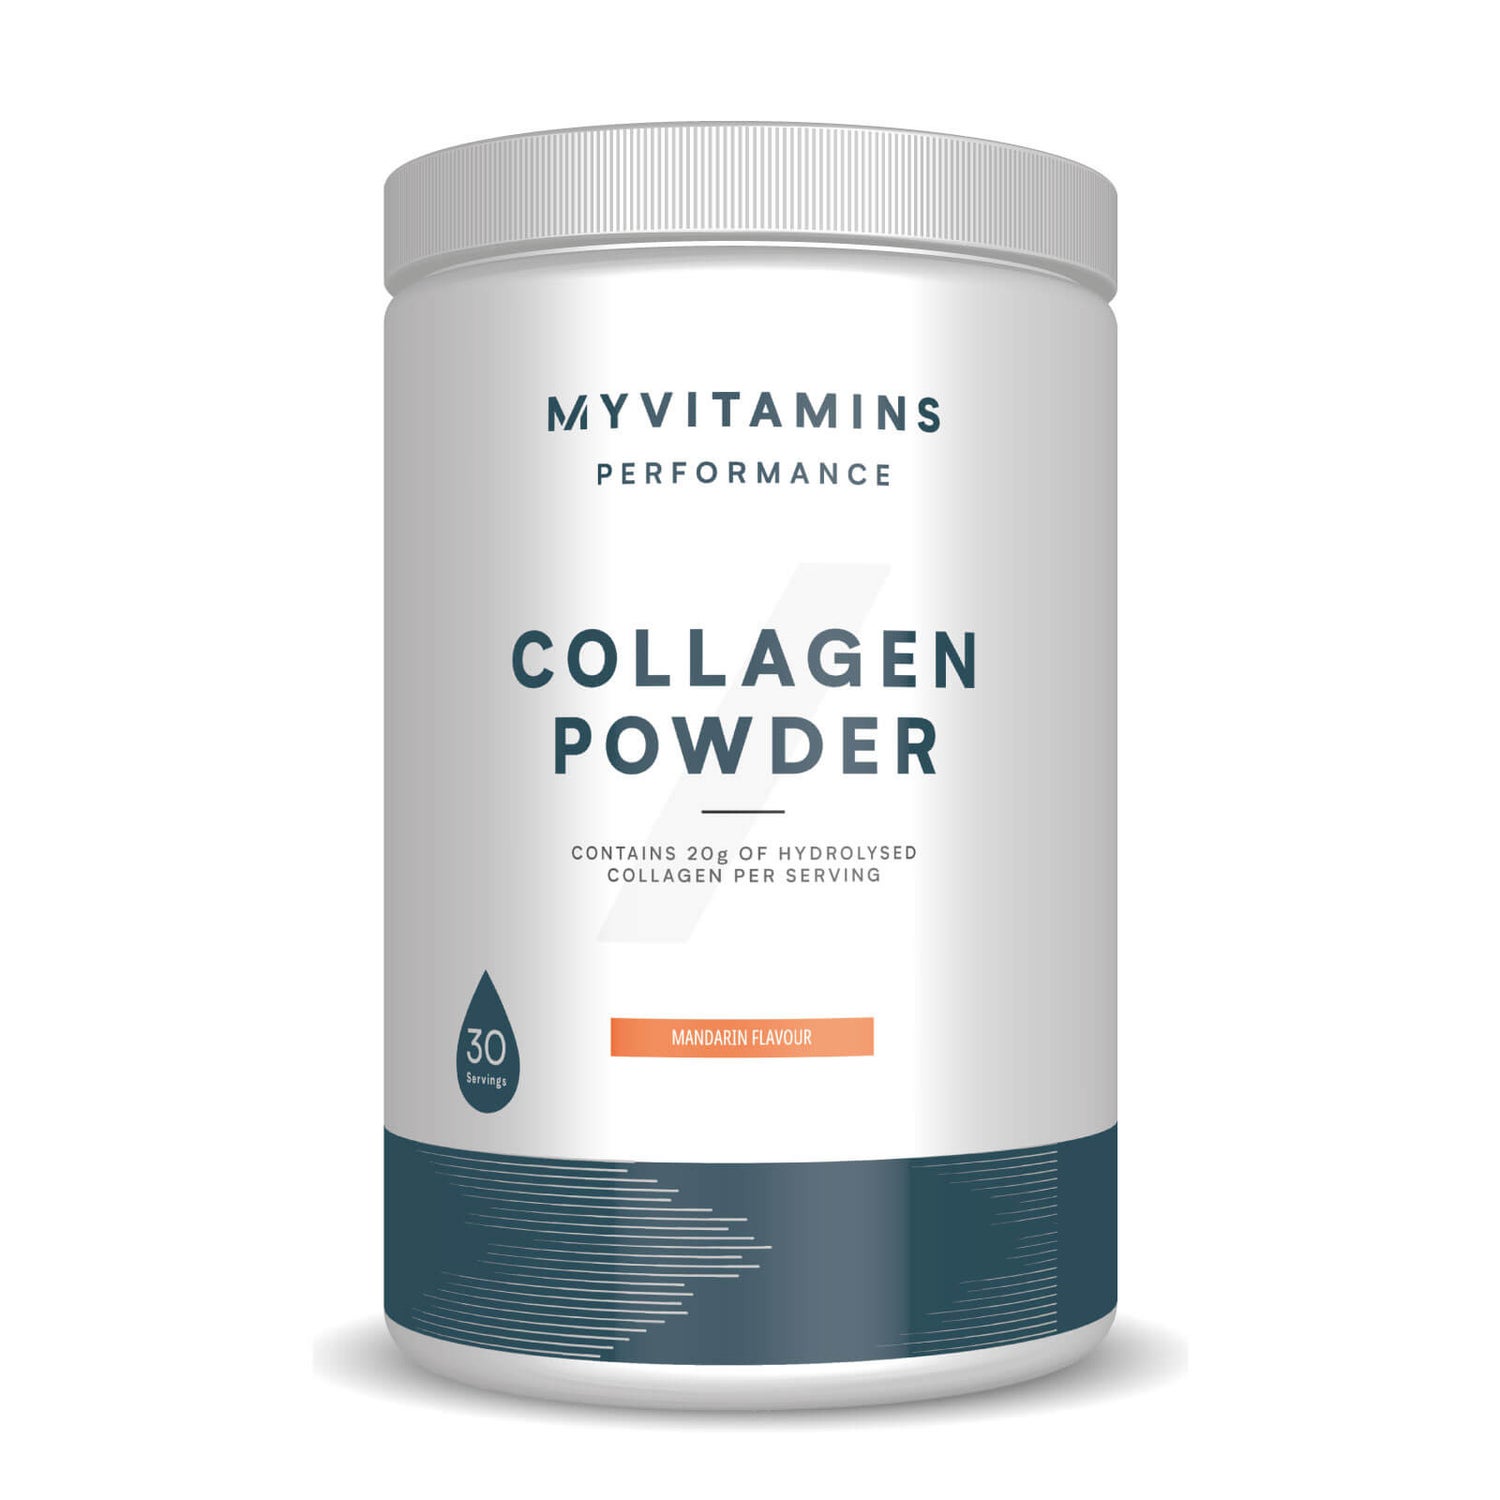 Myvitamins Collagen Powder Tub (WE) - 30servings - Mandarin